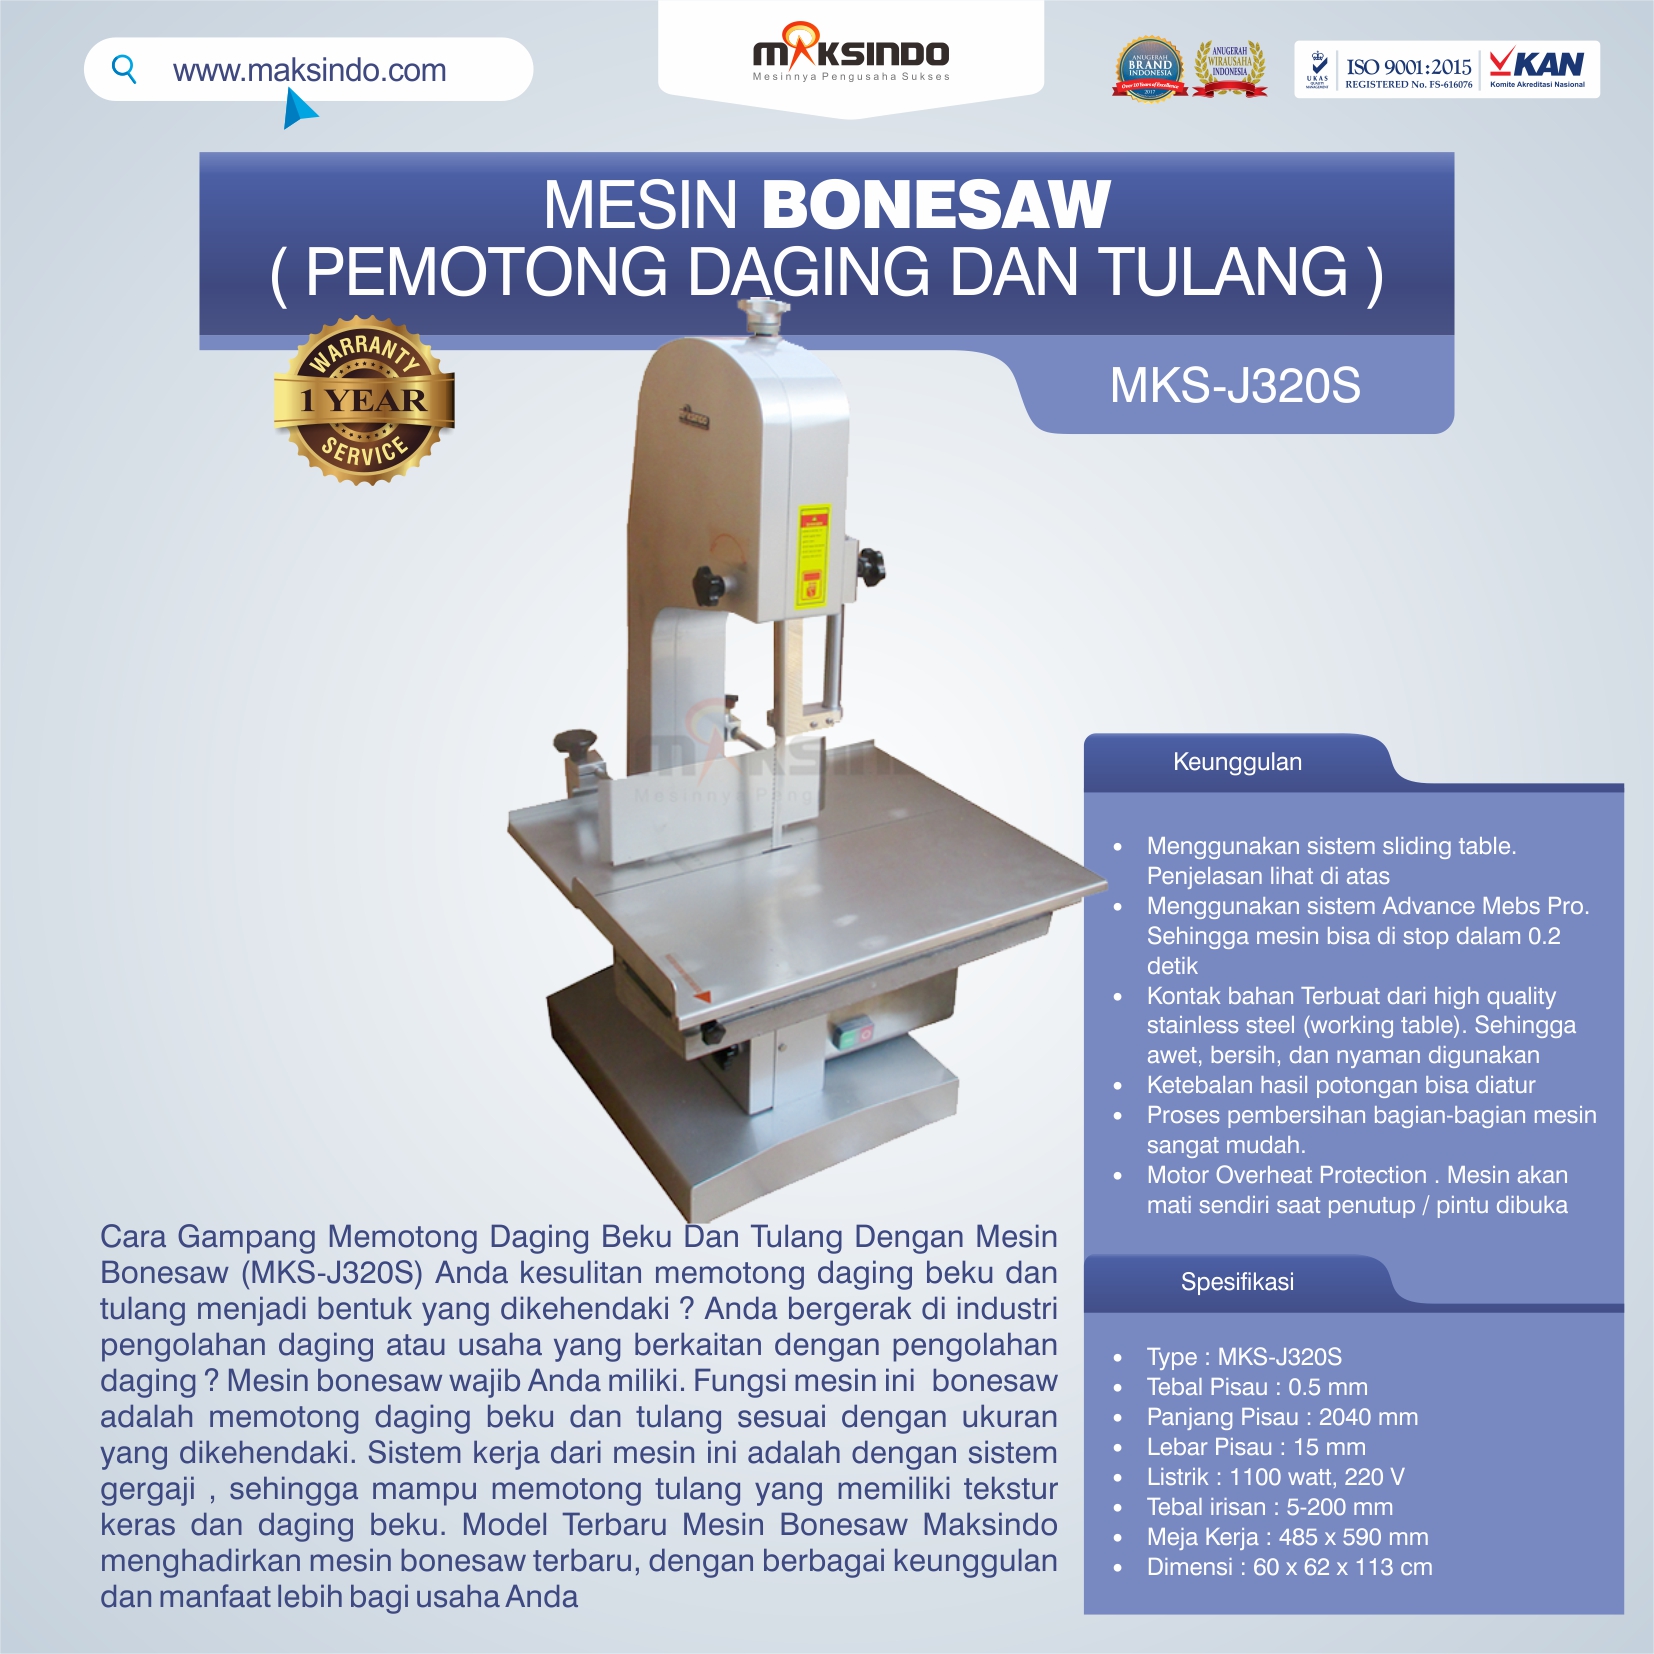 Jual Mesin Bonesaw MKS-J320S (pemotong daging dan tulang) di Malang